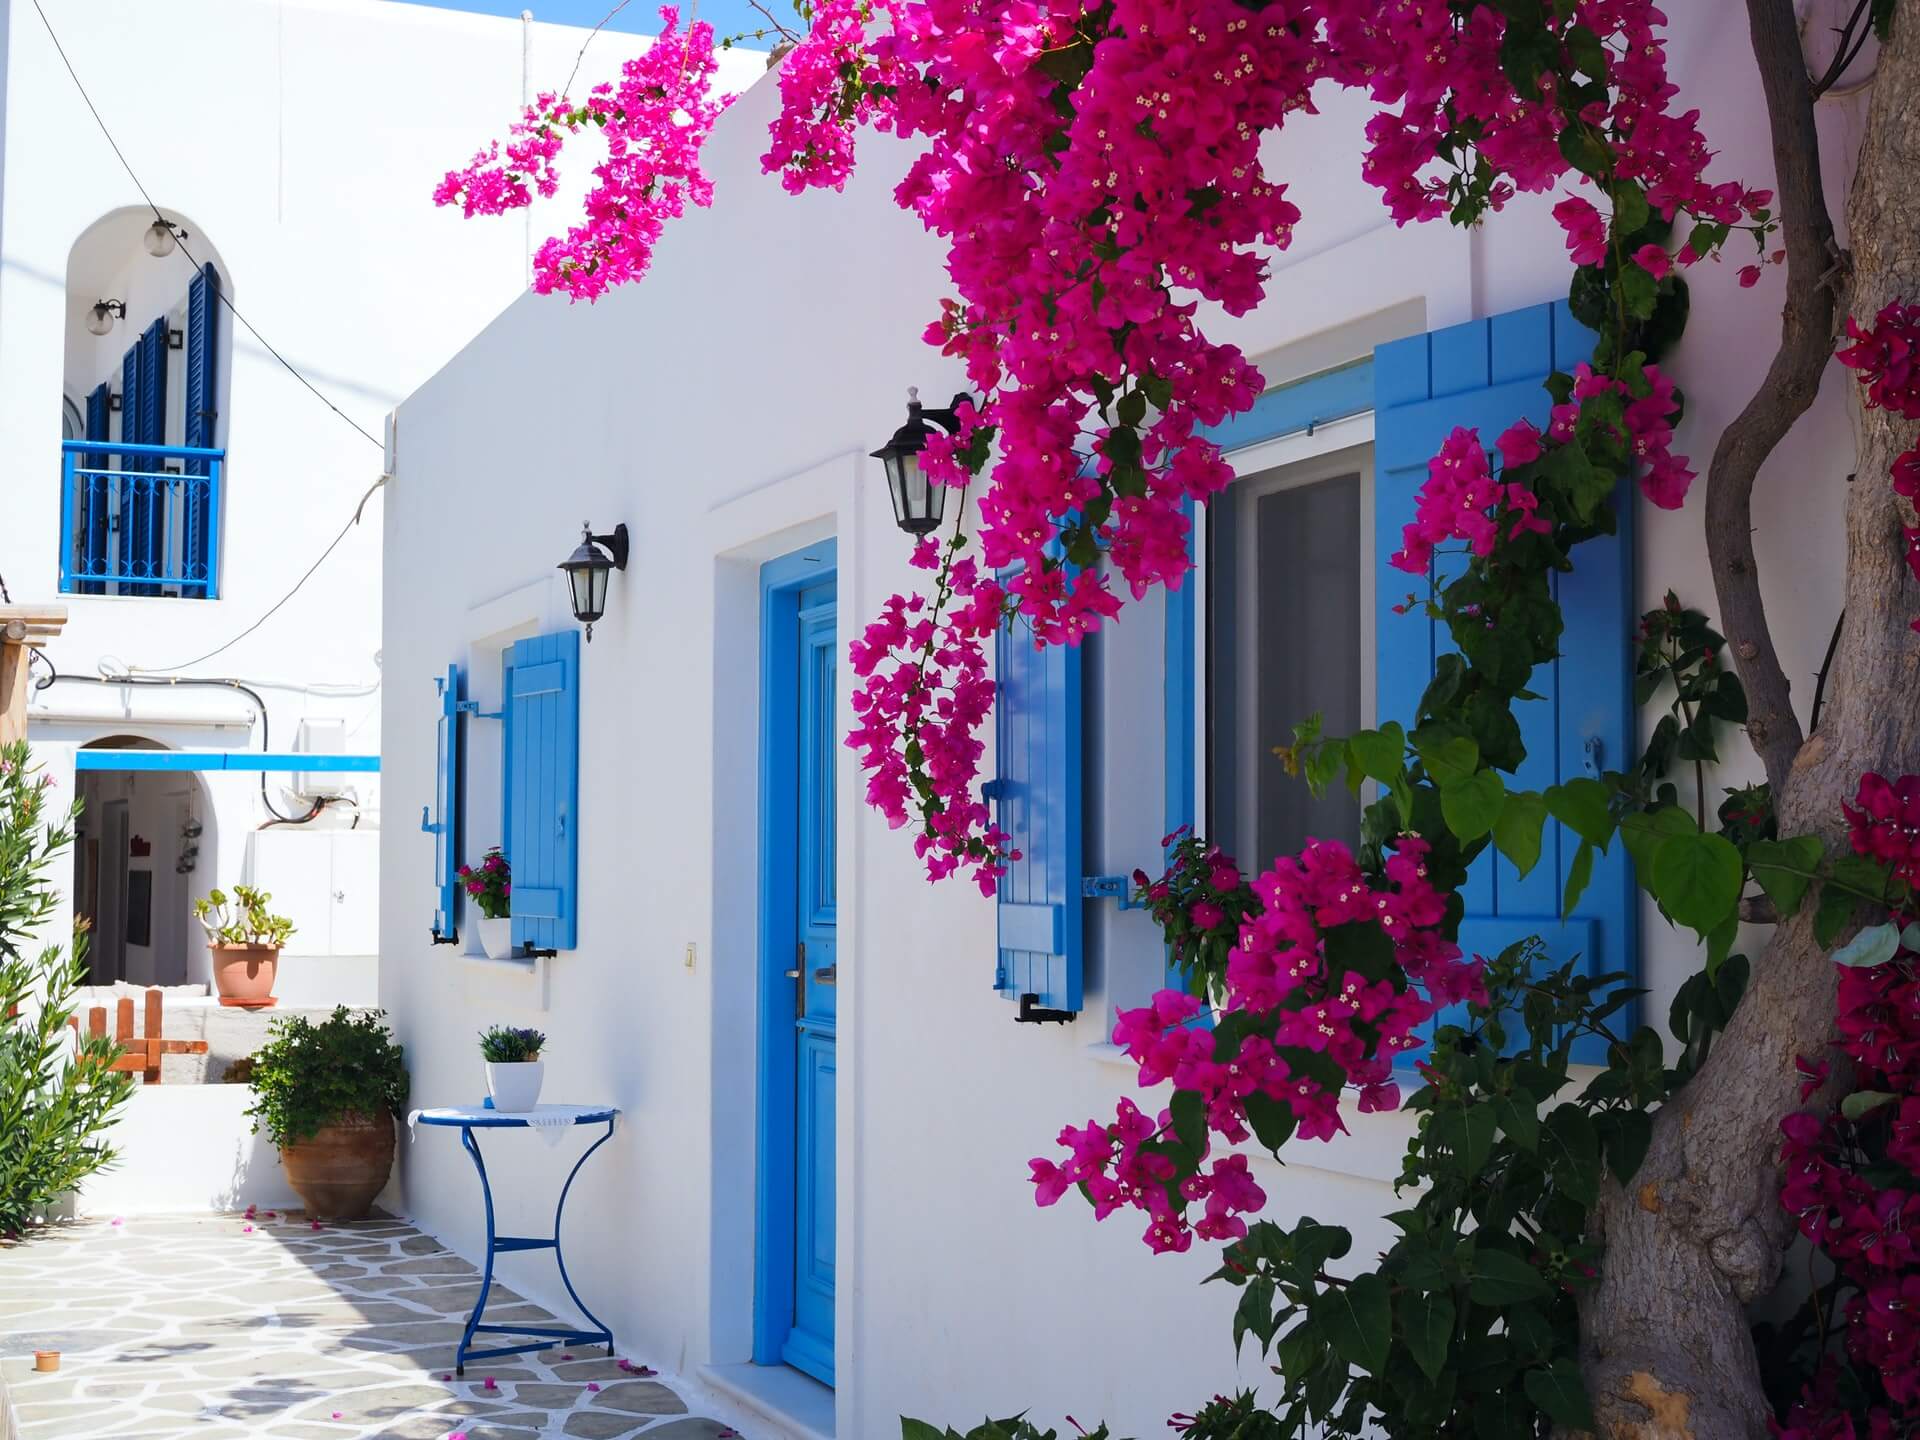 Best Greek Island to visit